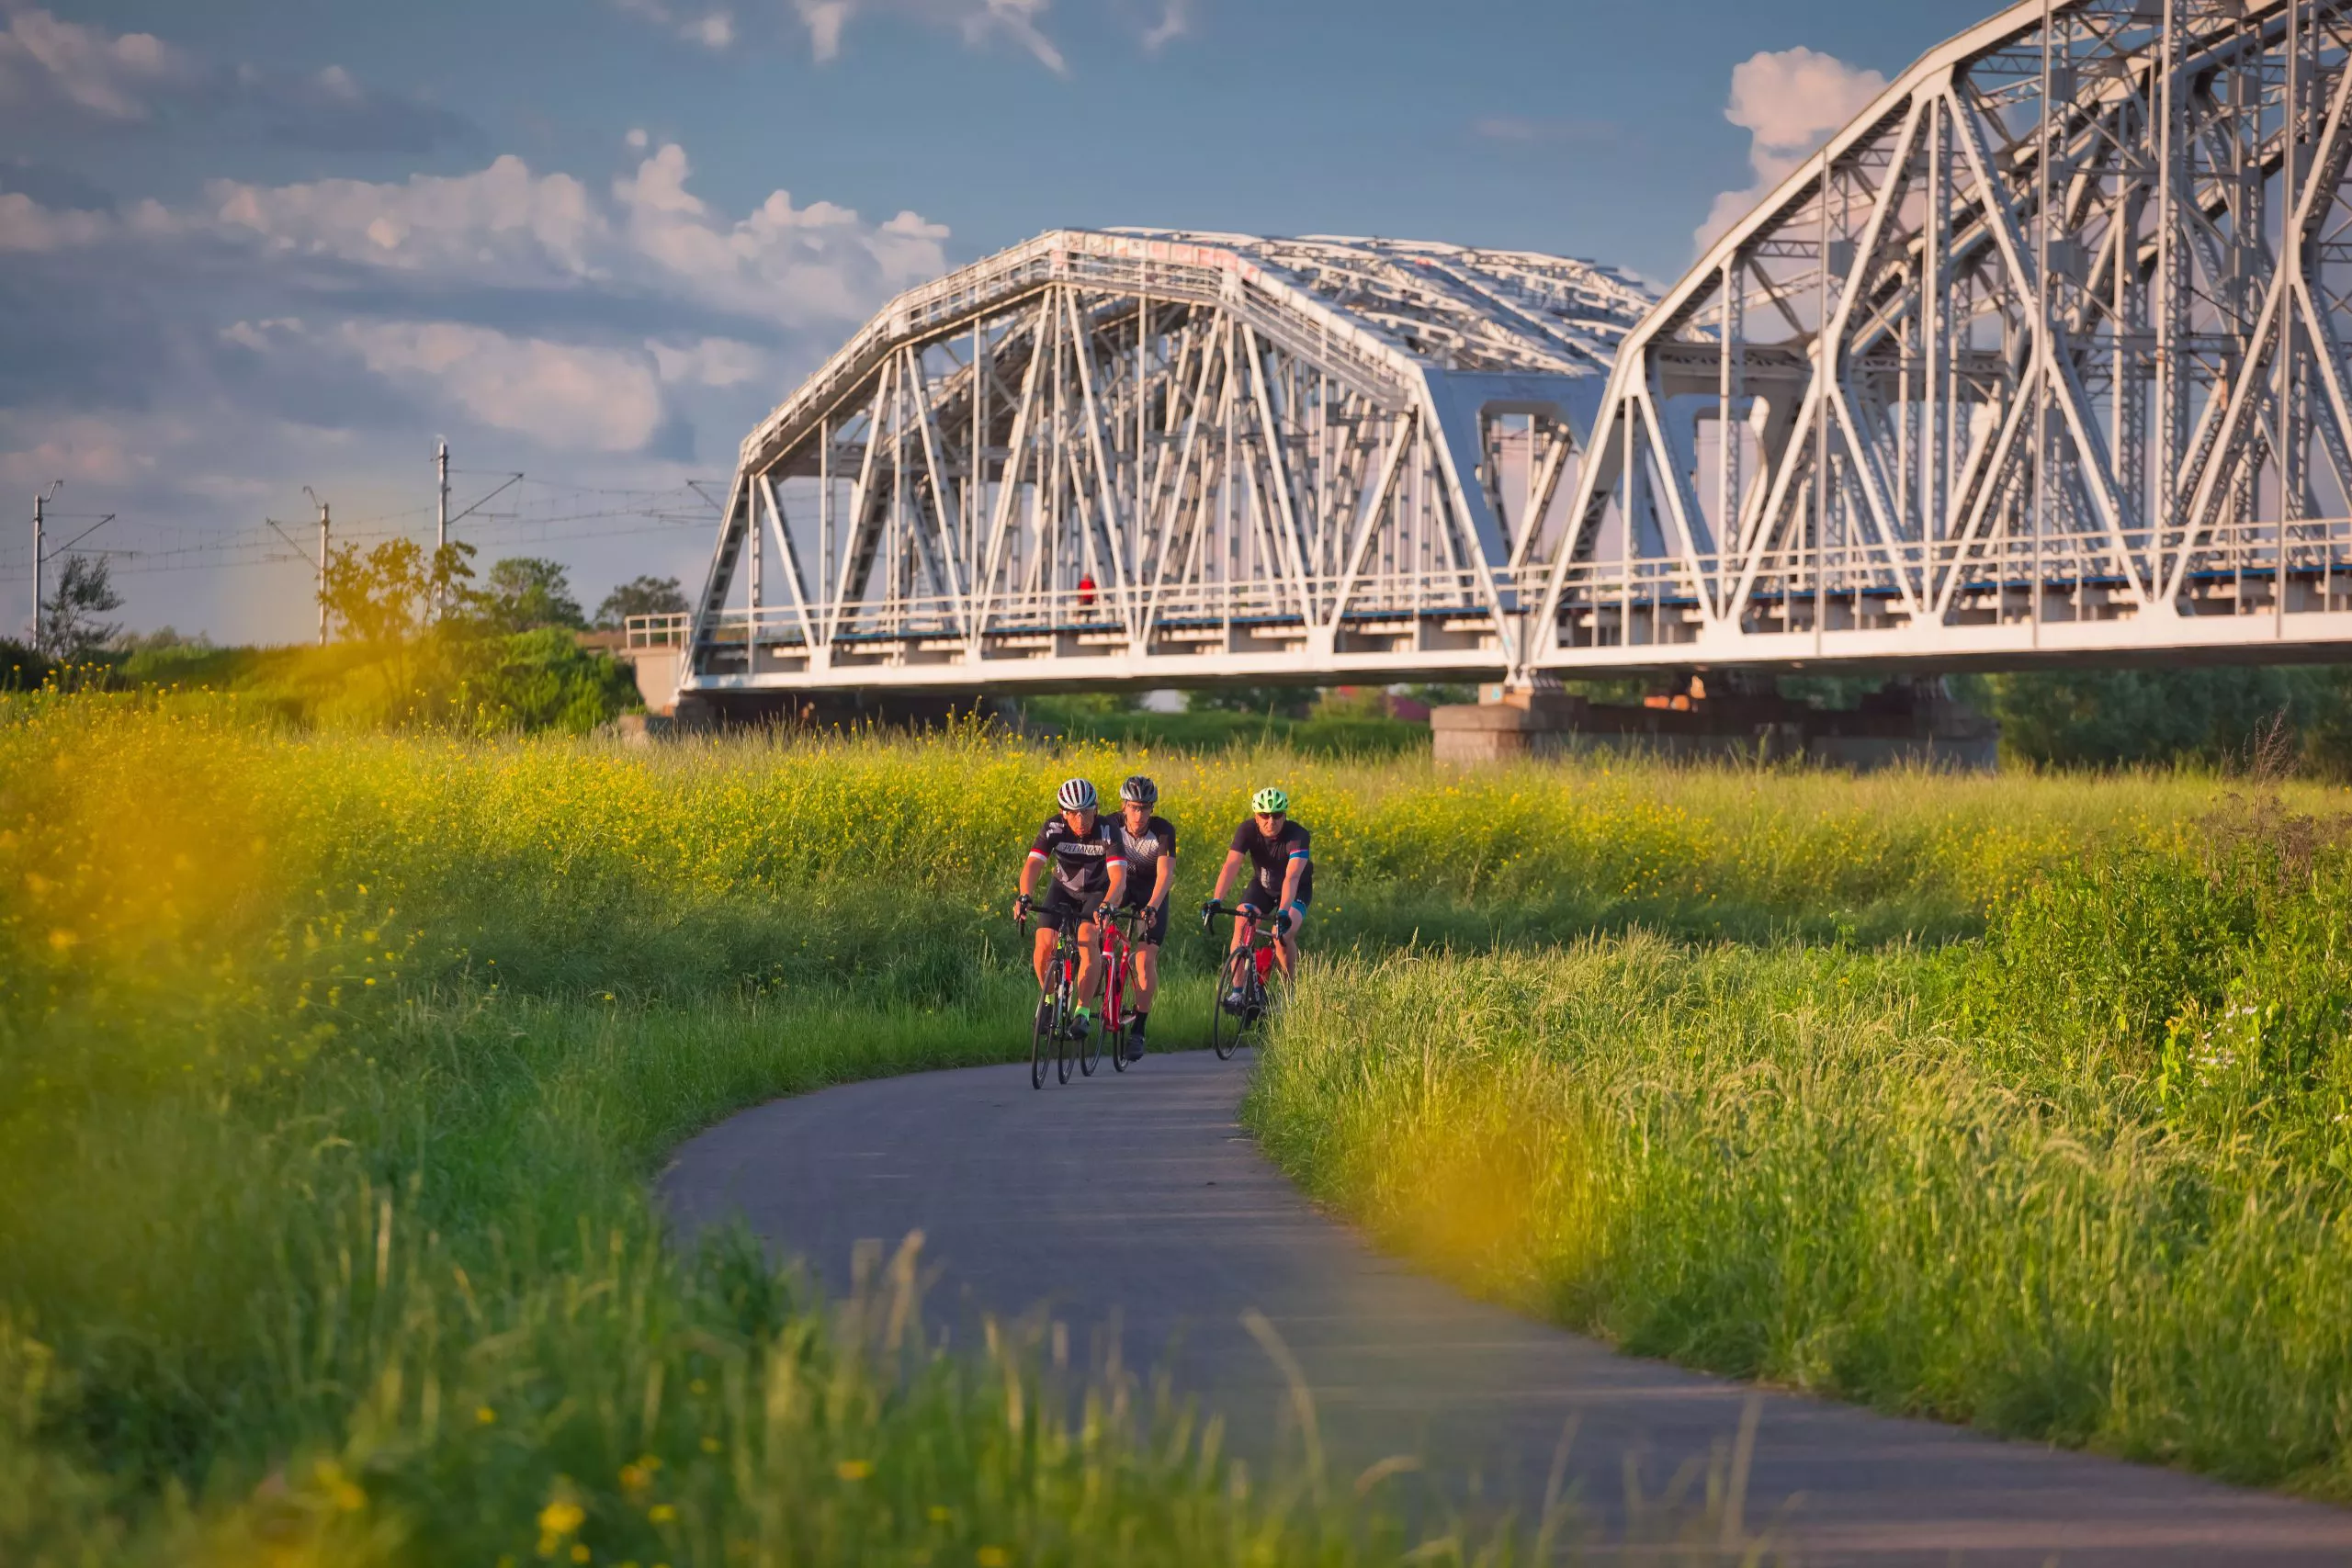 Blick auf einen Abschnitt des Radwegs, auf dem drei junge Radfahrer mit Helmen unterwegs sind. Im Hintergrund ist eine große weiße Brücke über den Weg zu sehen, während ringsherum grünes Gras mit gelben Blumen wächst. Der Himmel ist blau mit mittelgroßen weißen, wogenden Wolken.